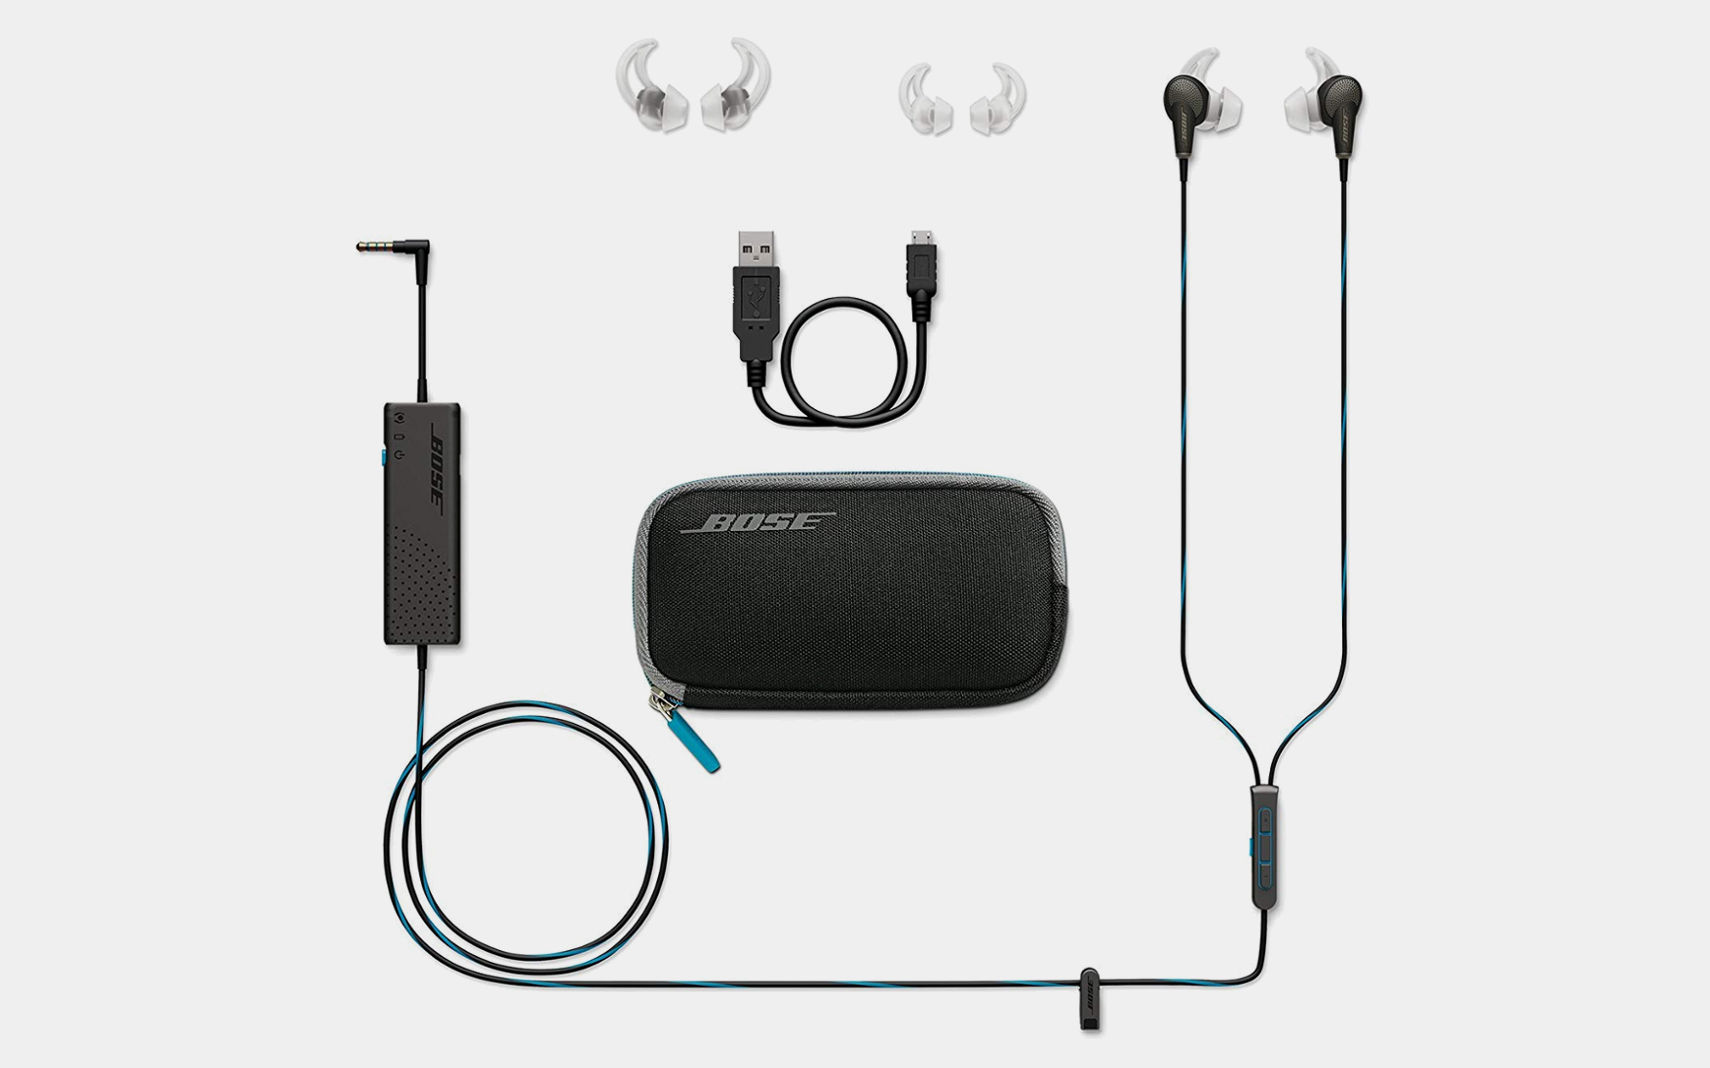 Bose Quiet Comfort 20 Acoustic Noise Cancelling Headphones